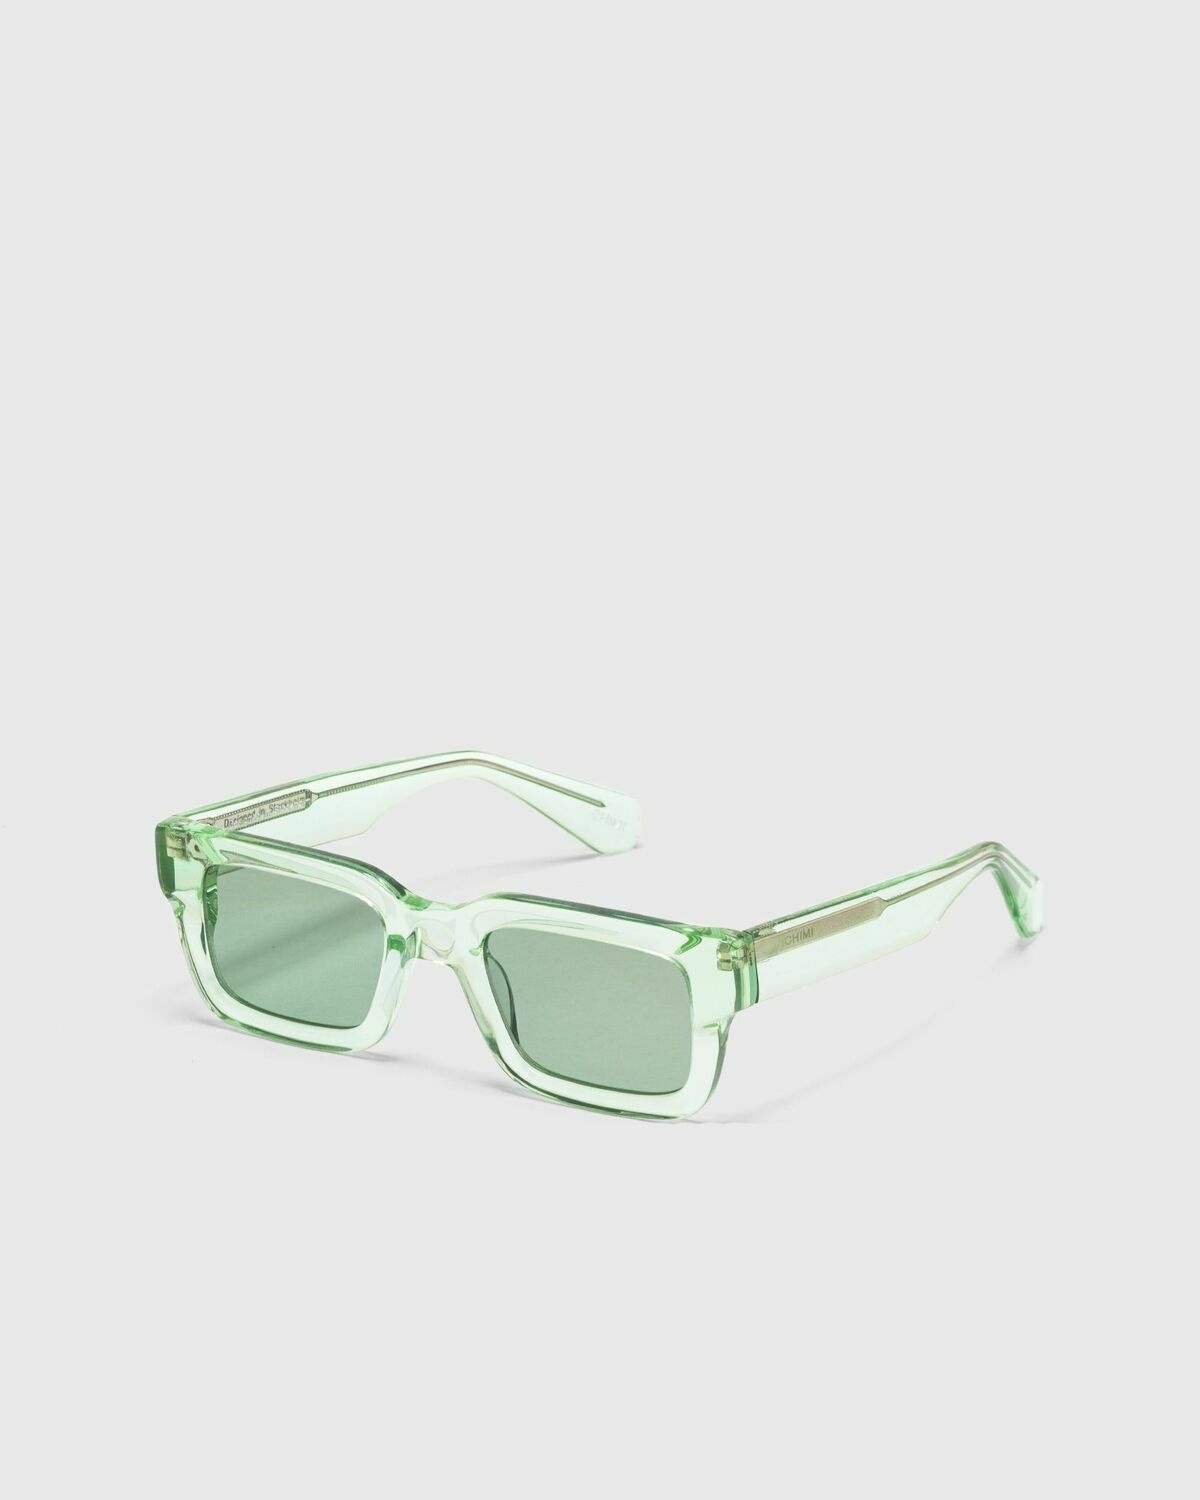 Chimi Eyewear 05 Light Green Green - Mens - Eyewear